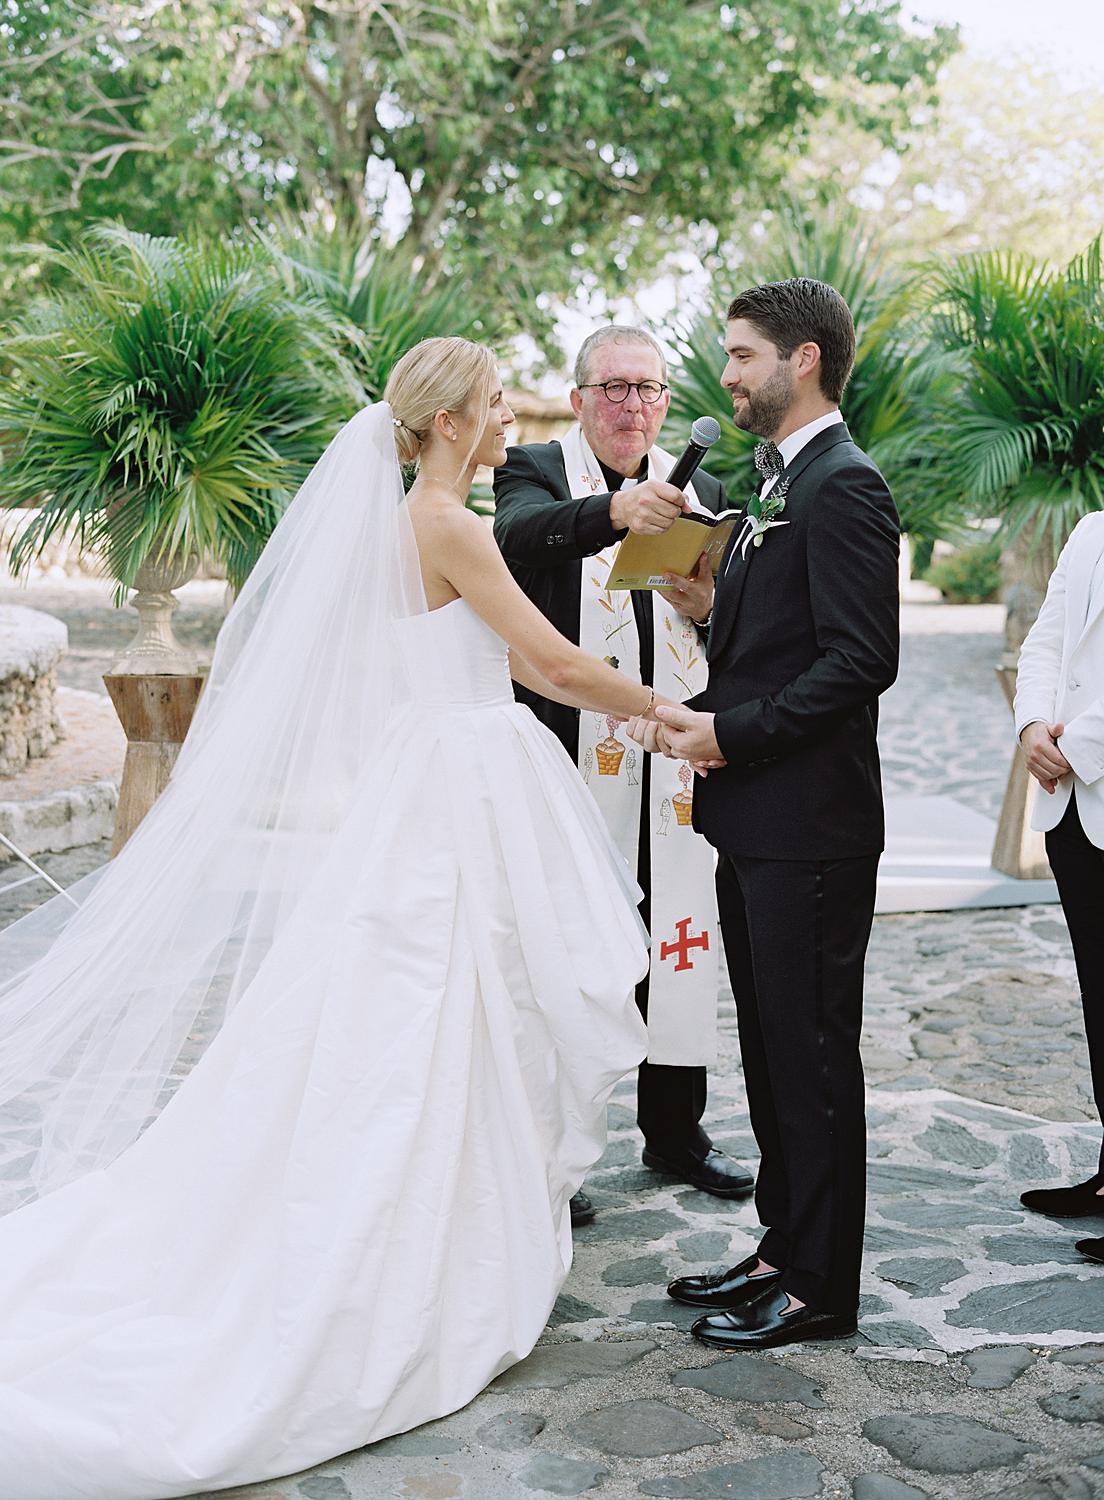 Bride and groom exchanging their vows during their Altos de Chavón wedding.